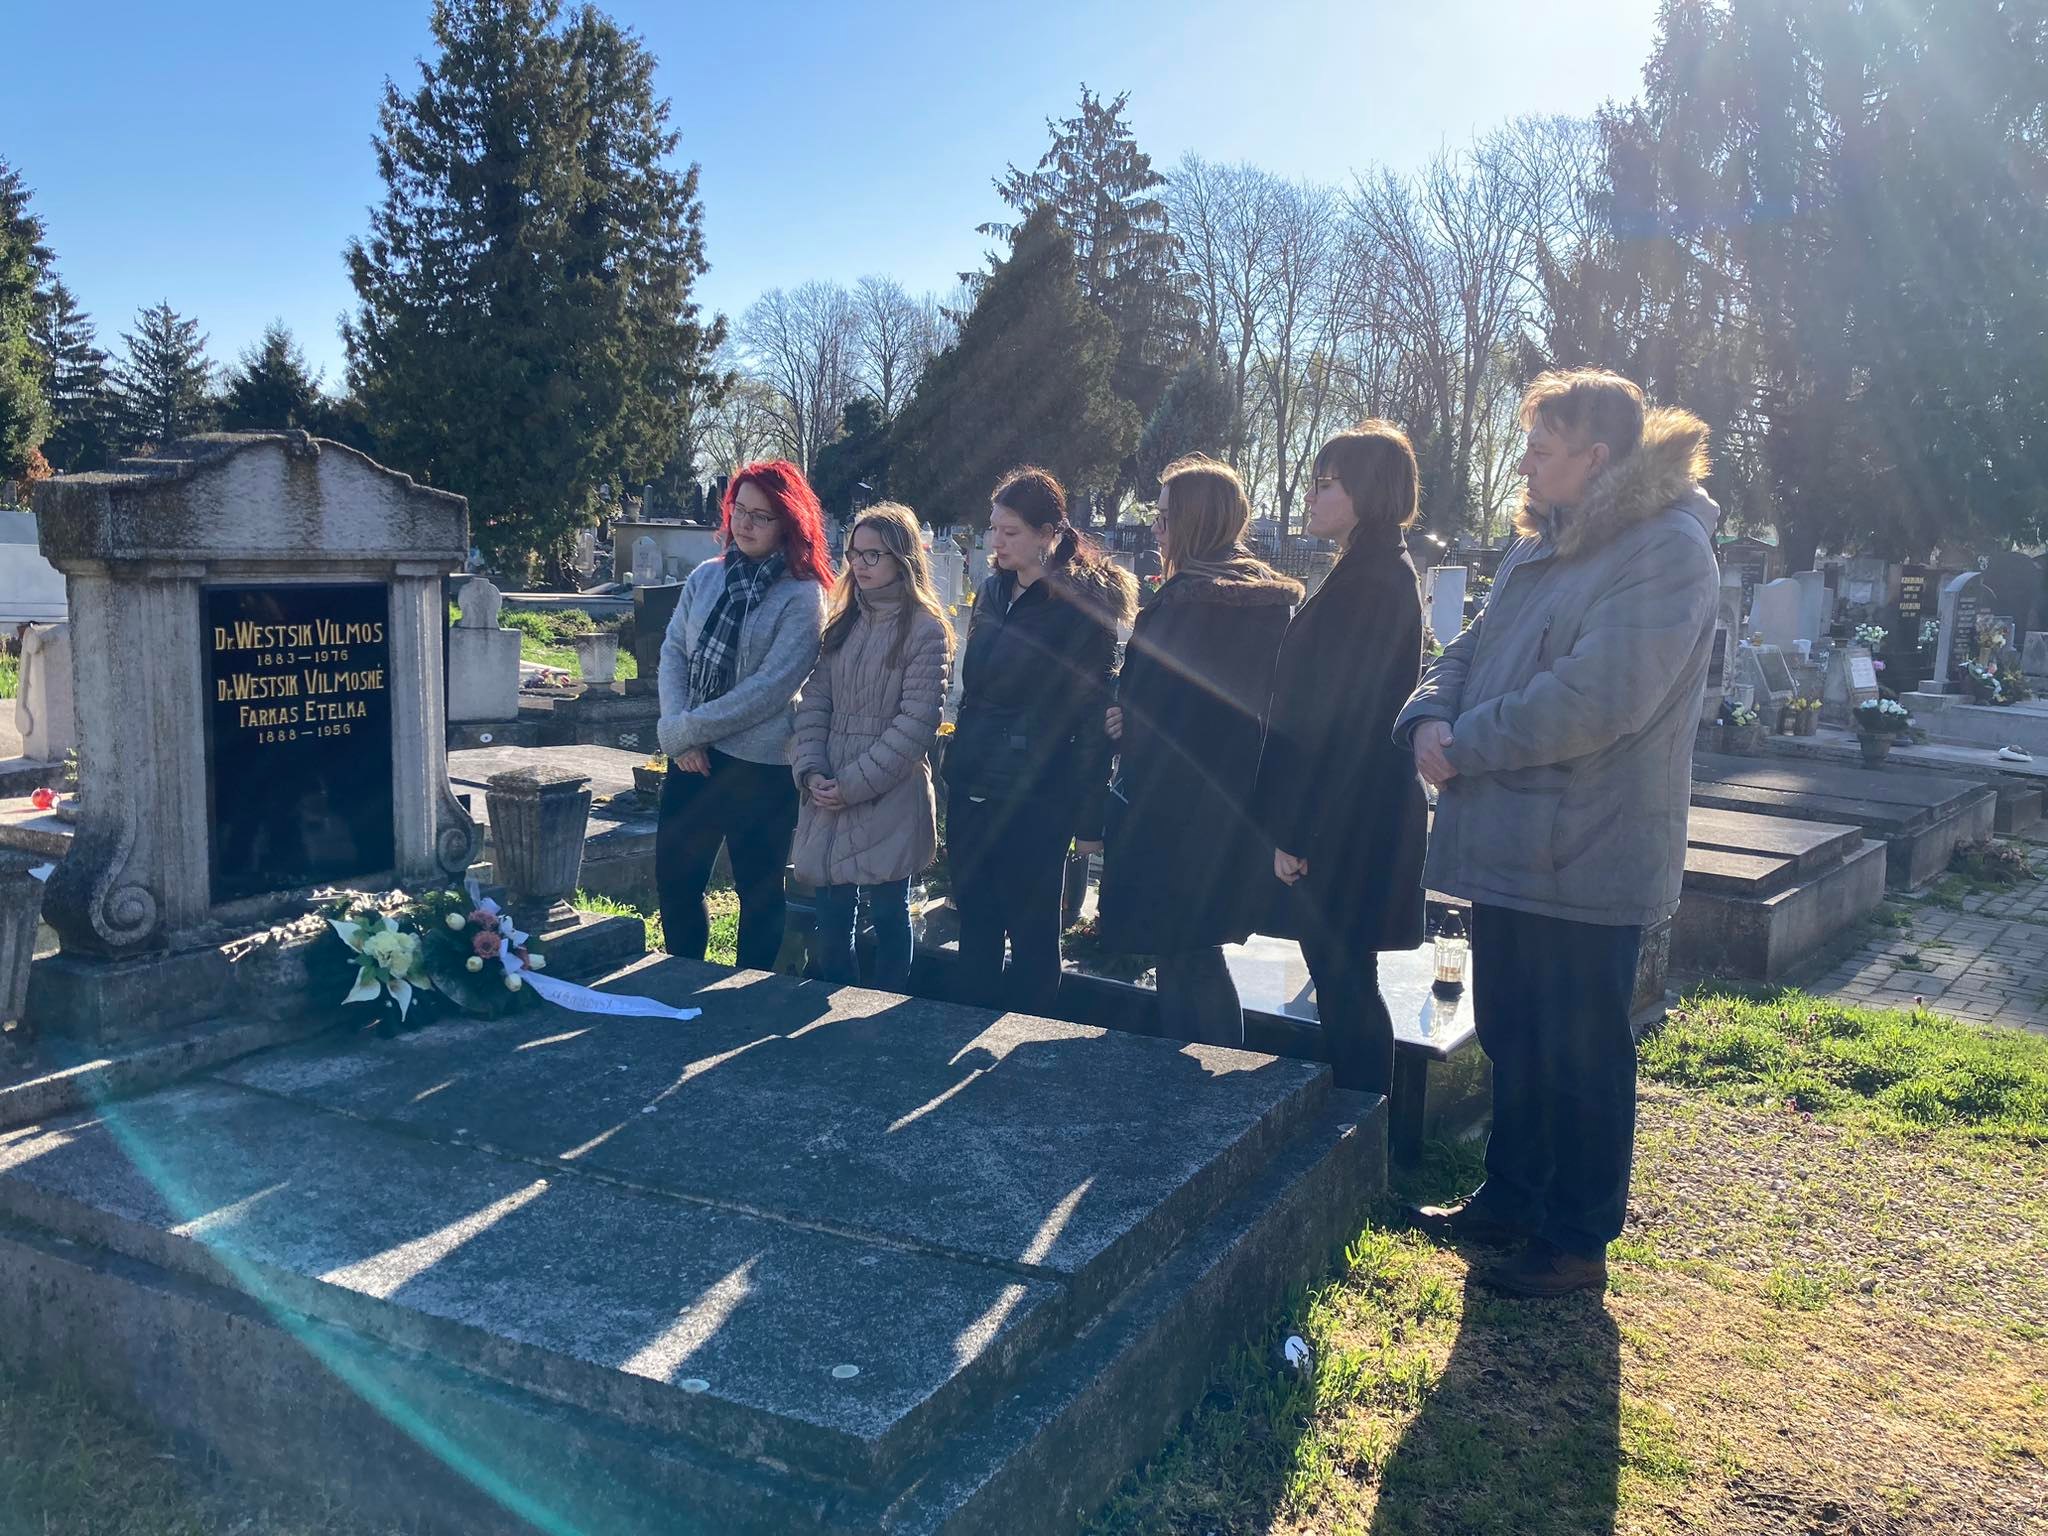 Hat fős csoport áll a virágokkal és sírkővel jelzett sír mellett, a tiszta kék ég alatti temetőben. a jelenet békés, a napfény átszűrődik a fák között.